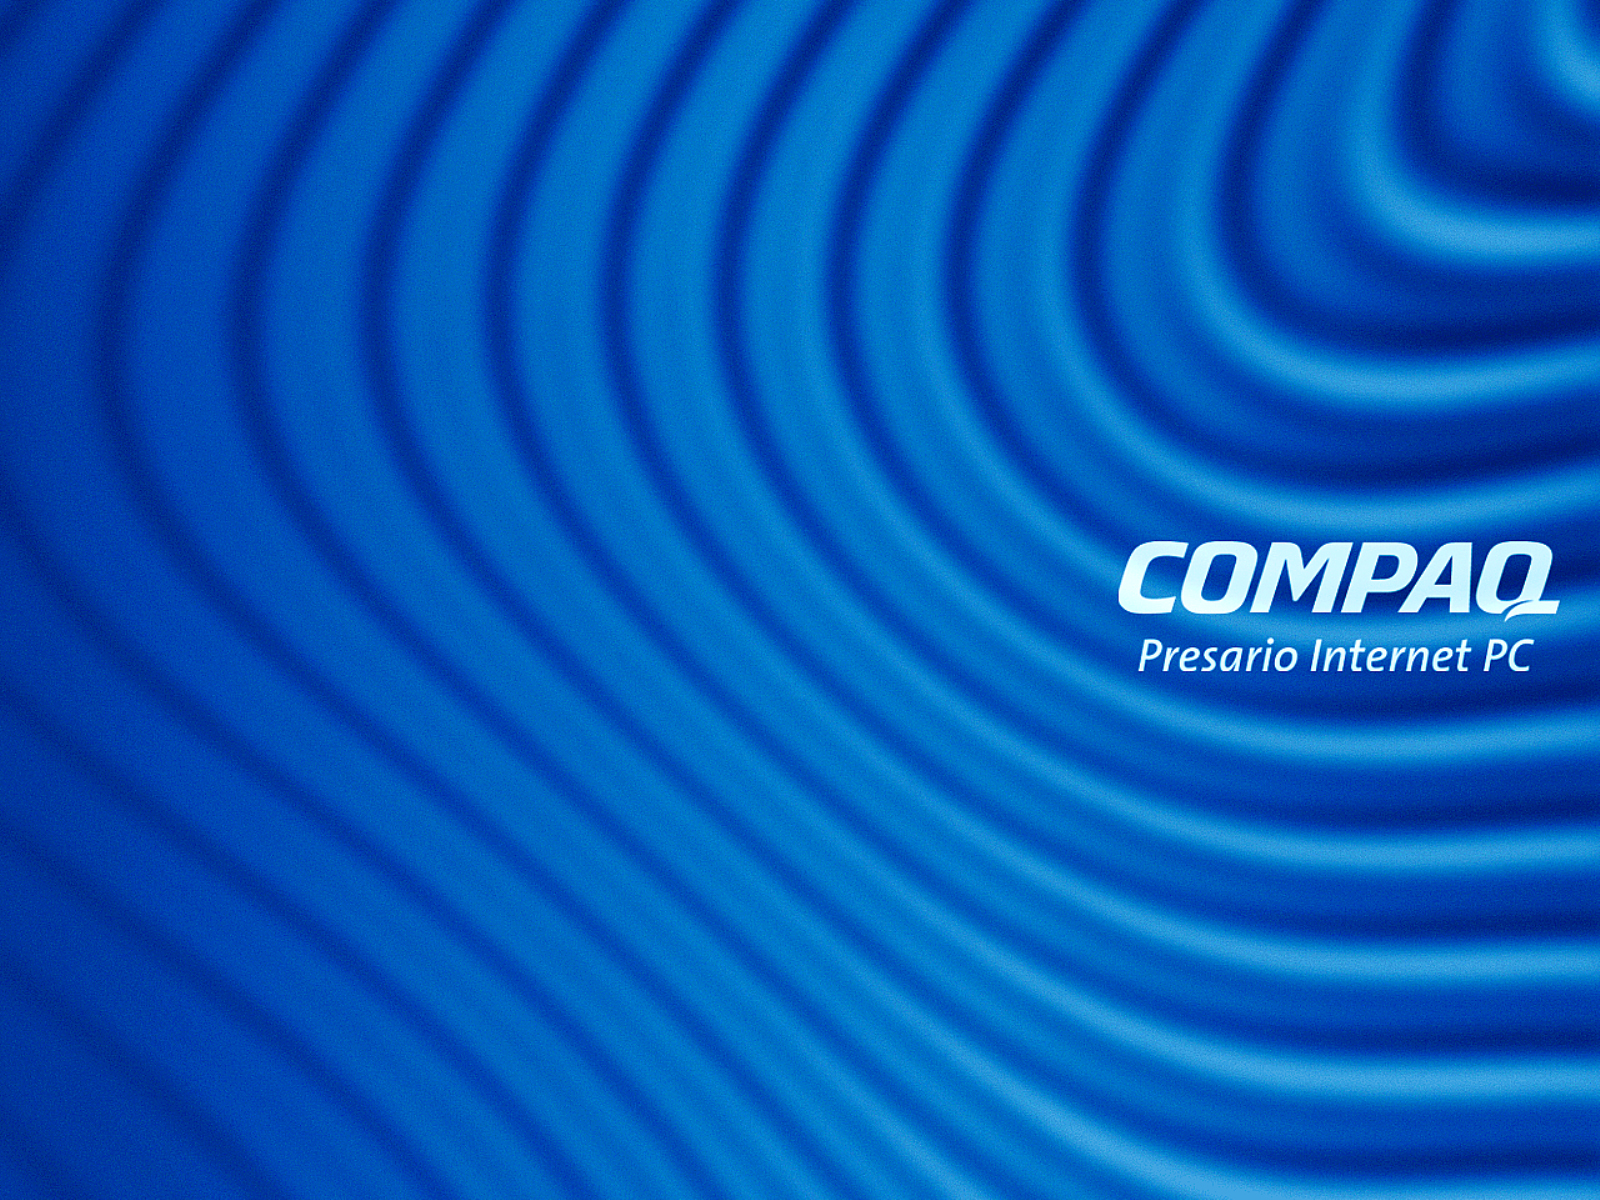 Compaq Presario 1 HD Desktop wallpaper images and photos 1600x1200